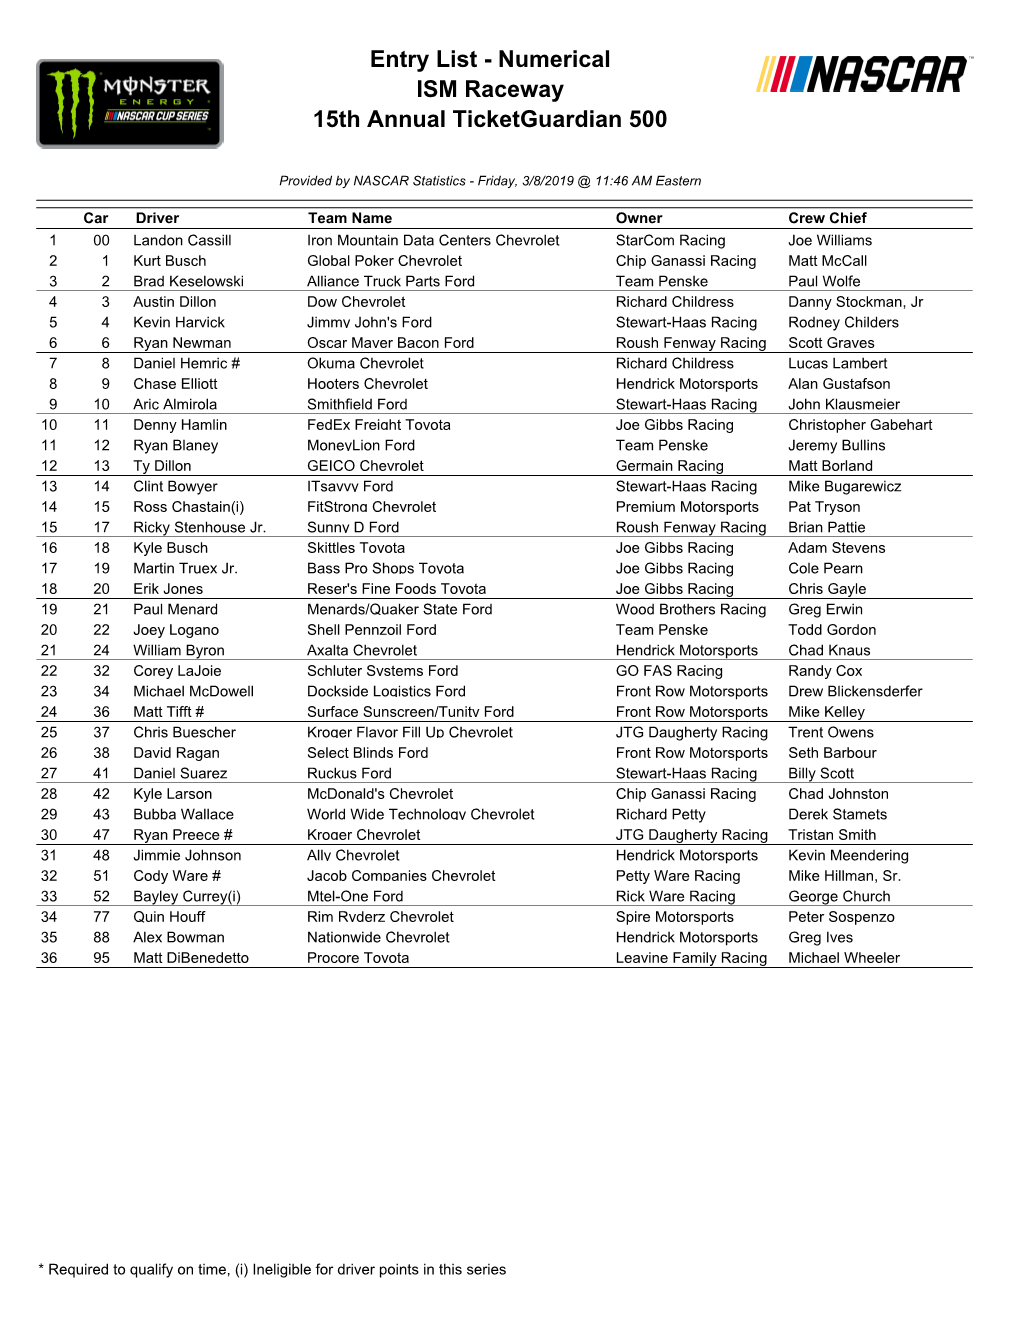 Entry List - Numerical ISM Raceway 15Th Annual Ticketguardian 500